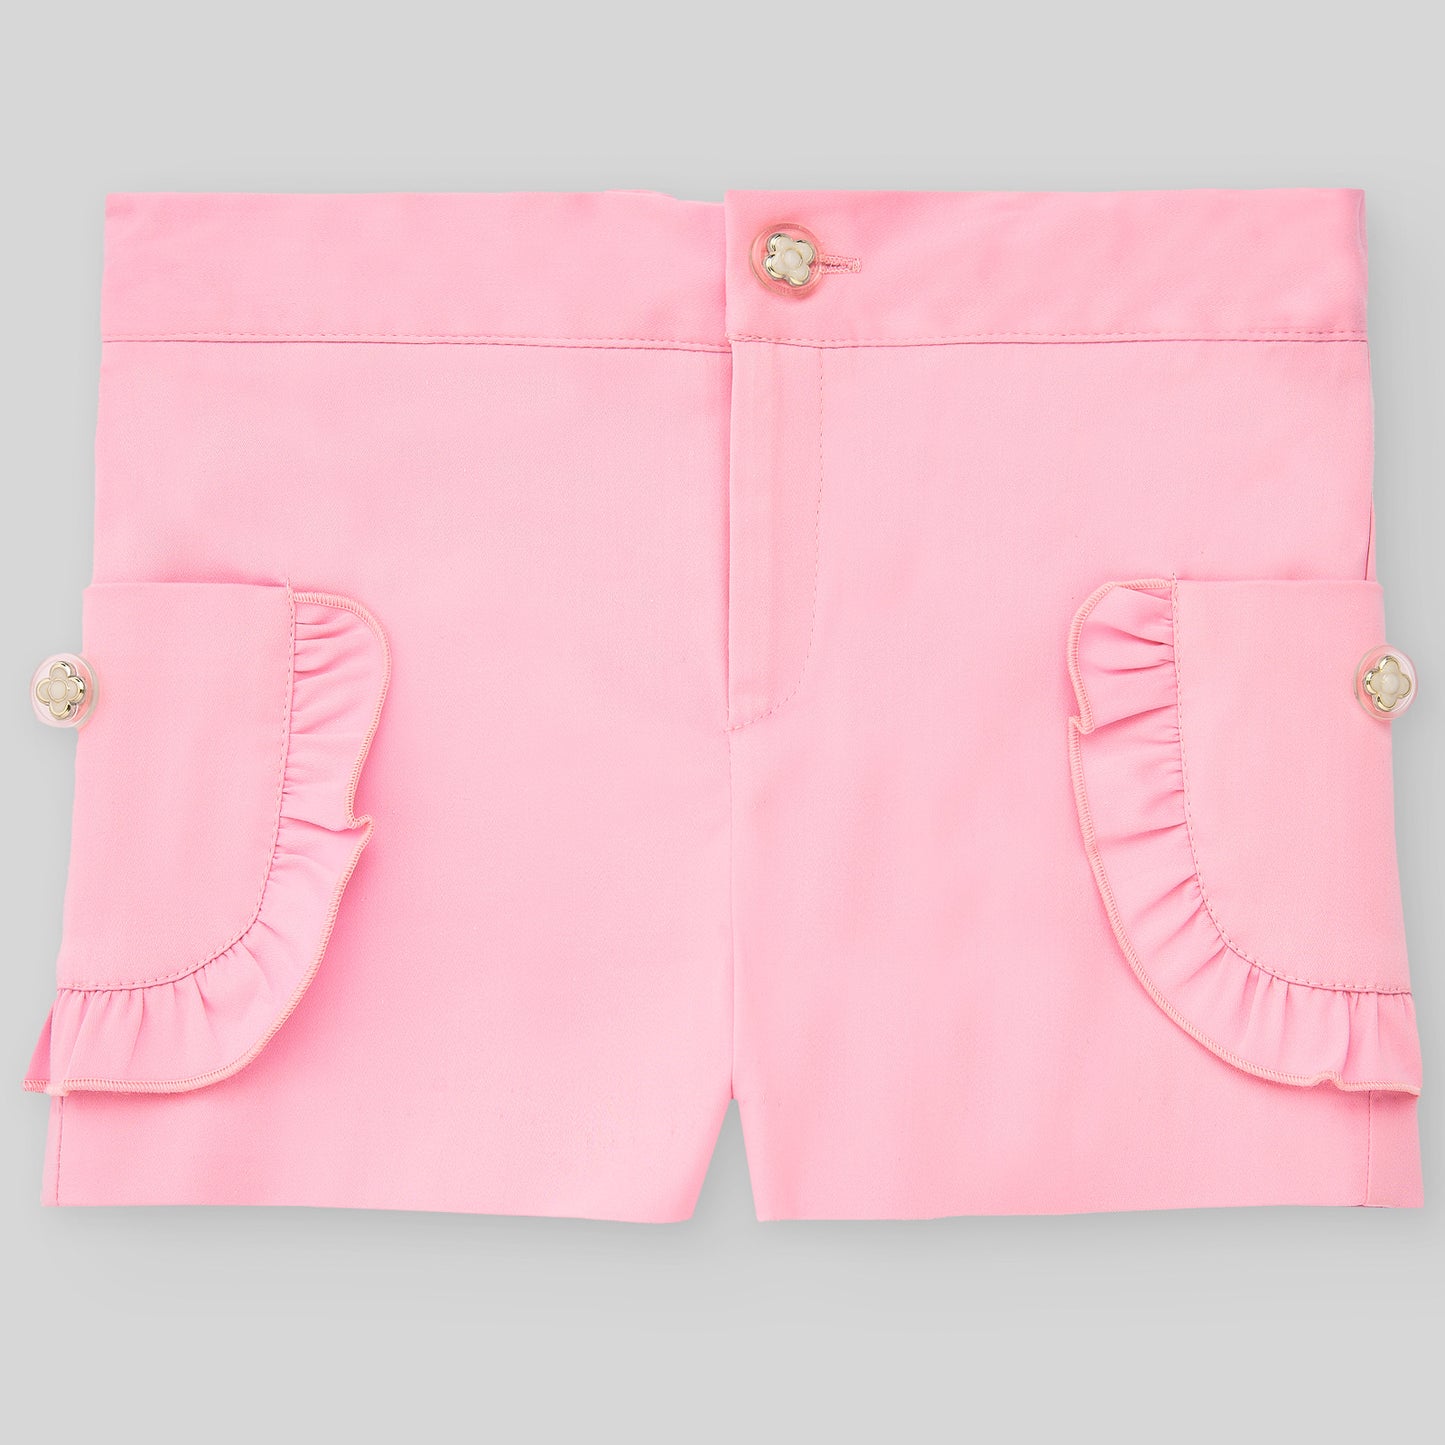 PAZ RODRIGUEZ 2-piece set Multicolored cotton top + pink shorts